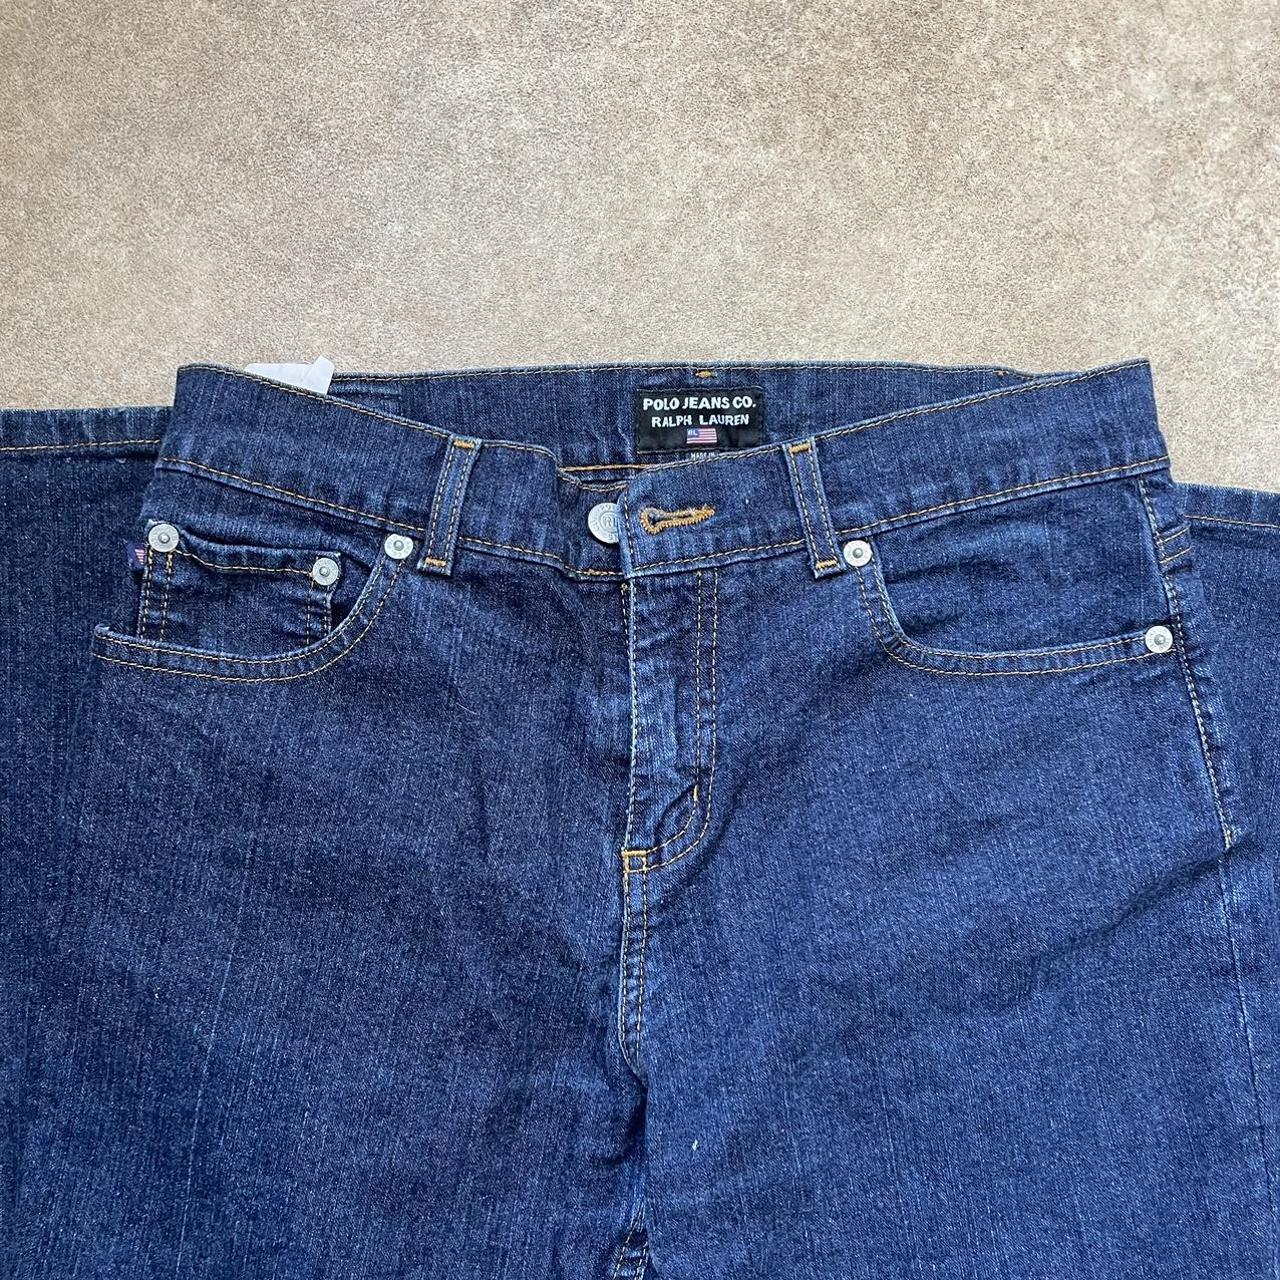 Polo Ralph Lauren Women's Navy Jeans | Depop